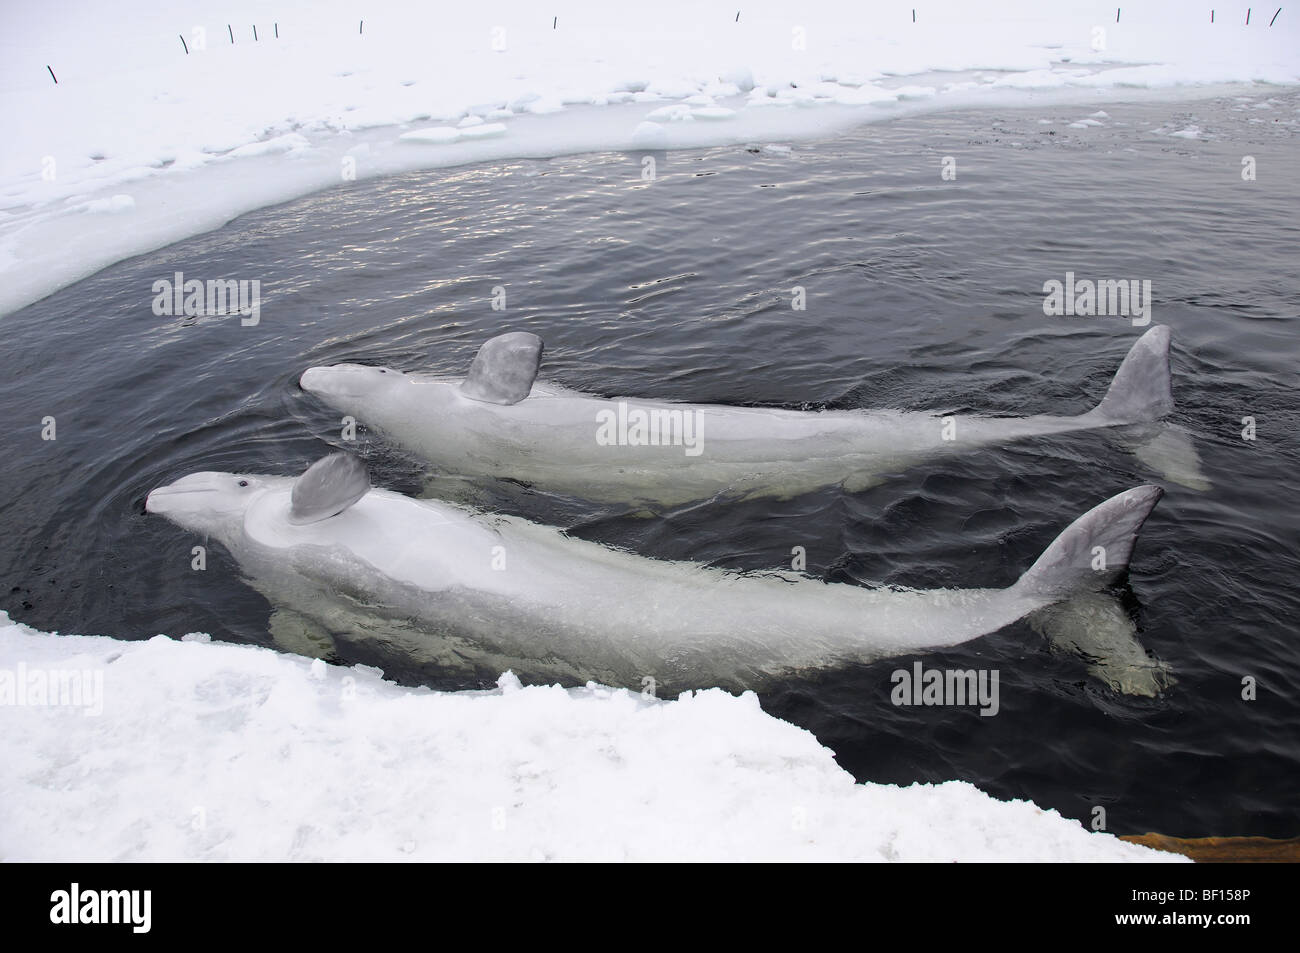 Delphinapterus Leucas, weißen Wal, Beluga, Outdoor Delphinarium Belukha, Kanarischen Meer, weißes Meer, Russland Stockfoto